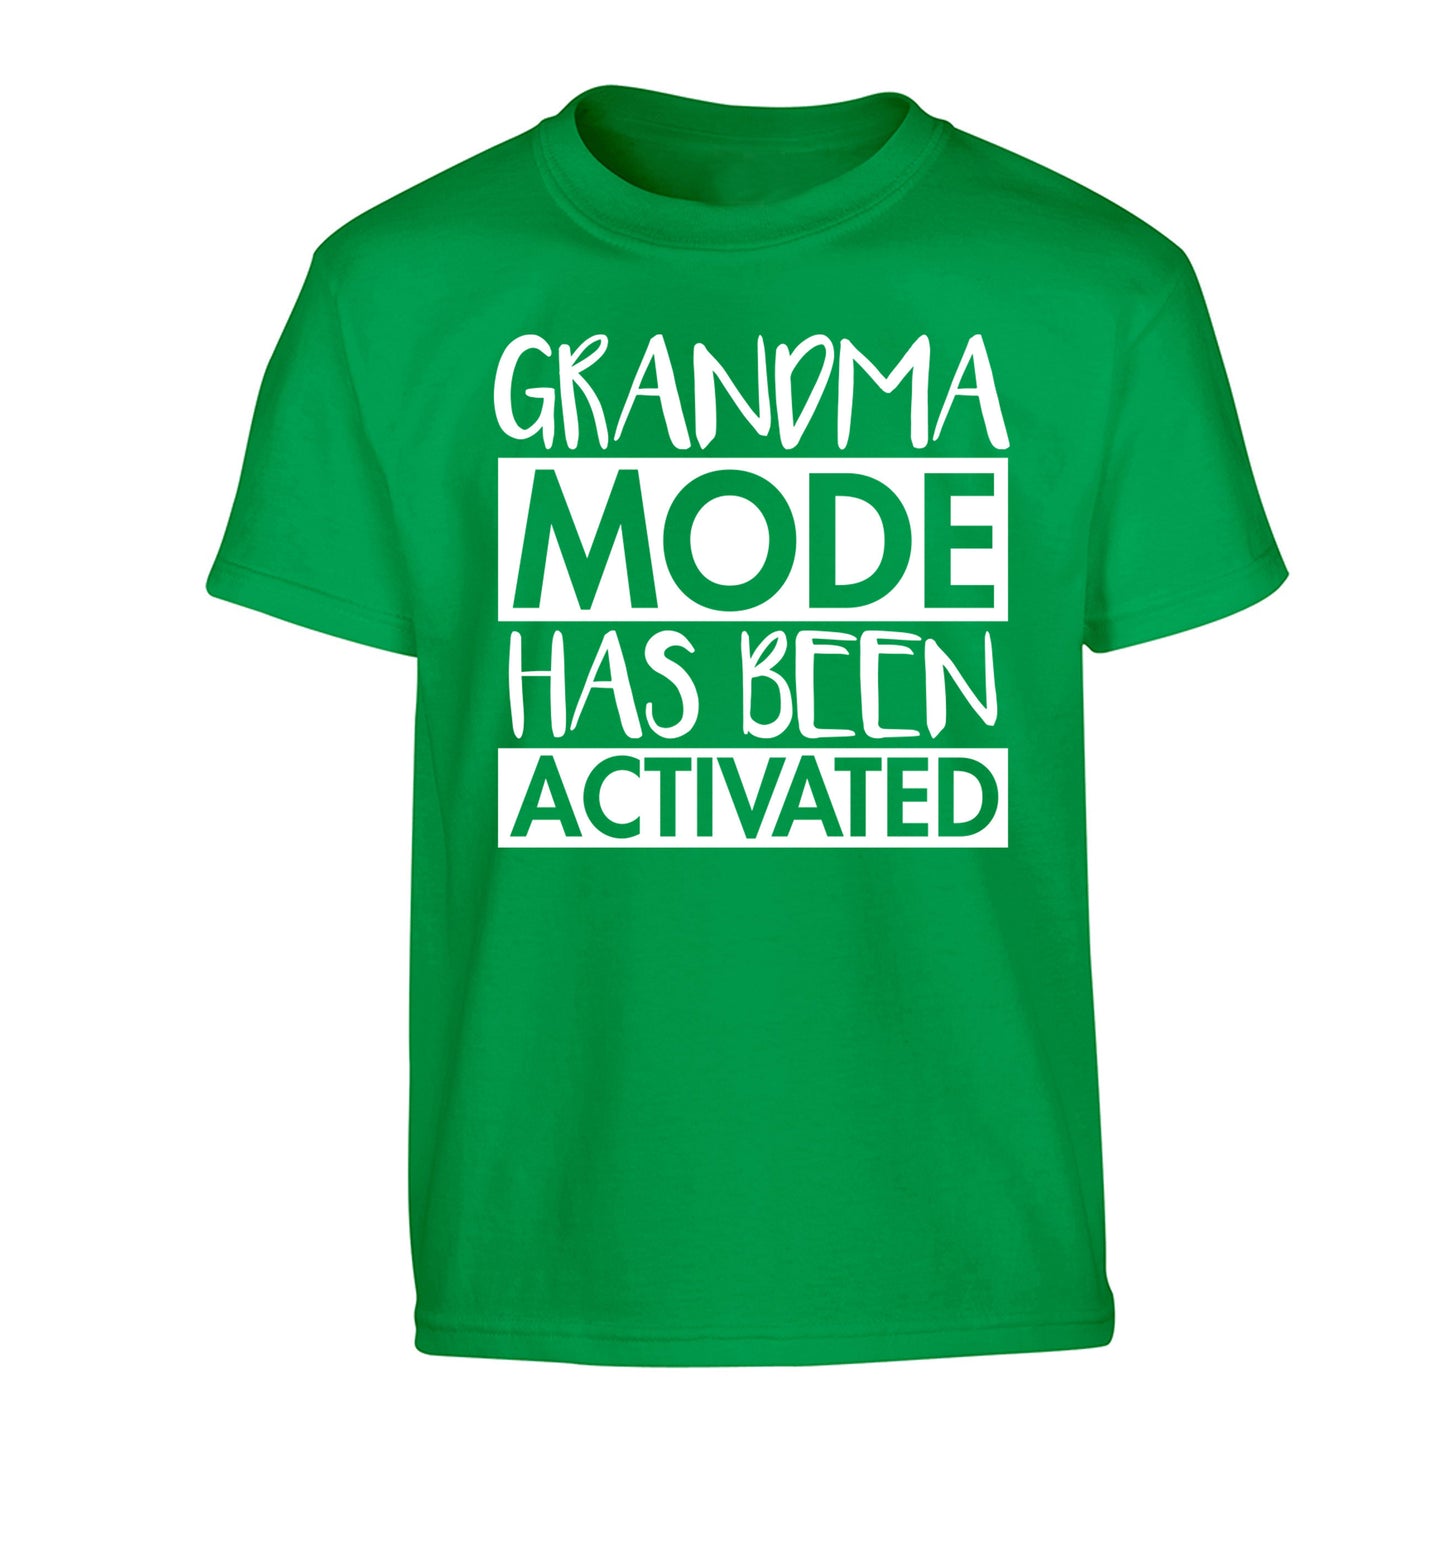 Grandma mode activated Children's green Tshirt 12-14 Years